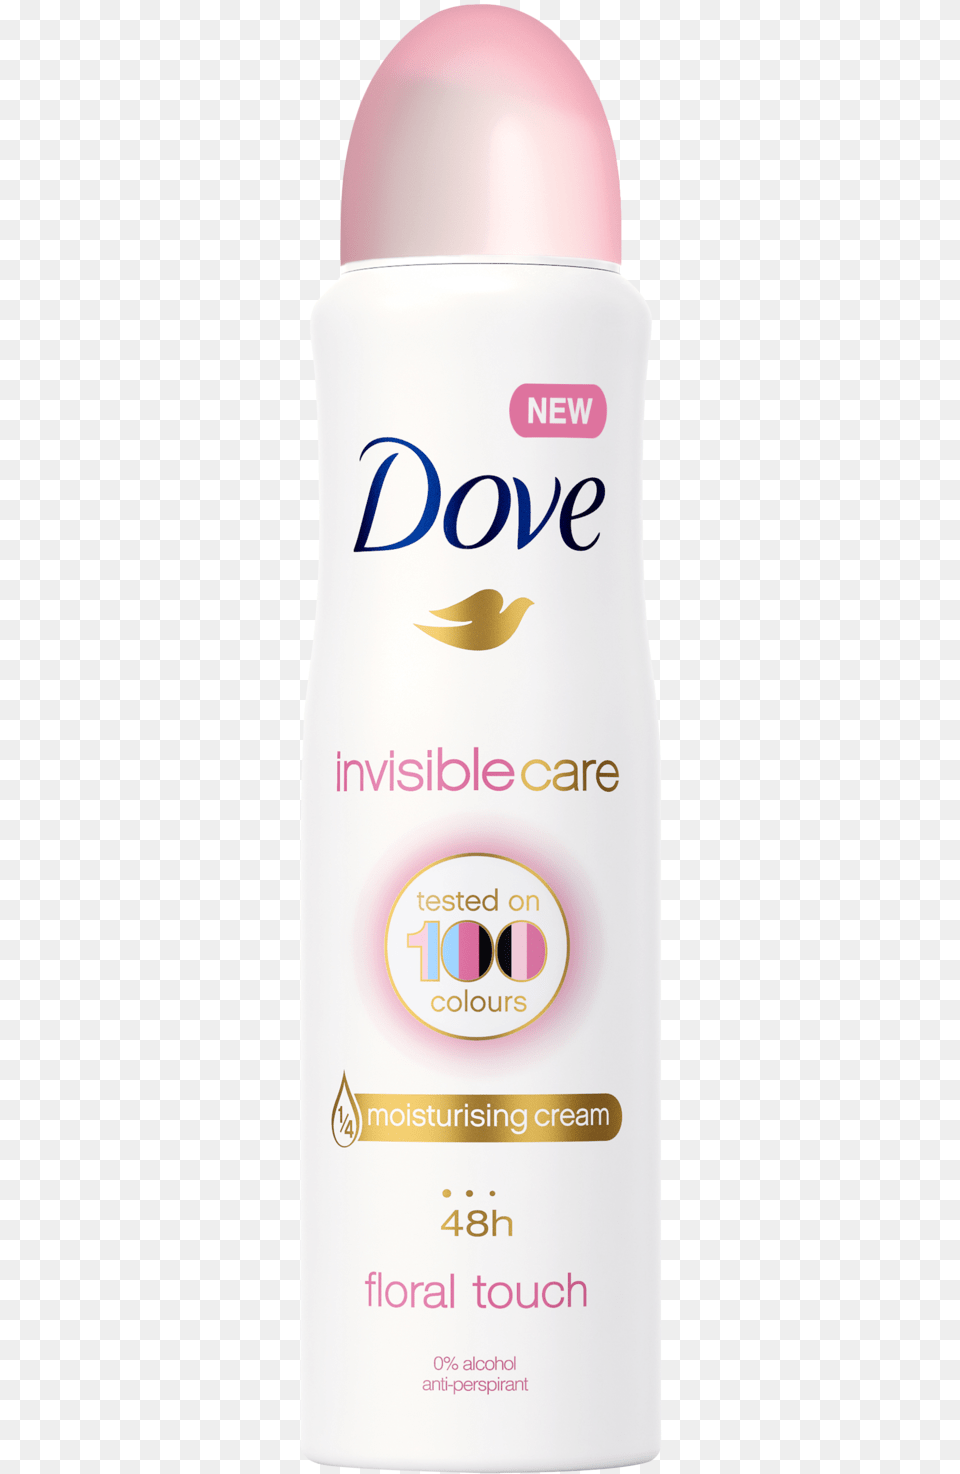 Invisible Care Antiperspirant Deodorant 150ml Dove Deodorant Spray Invisible Care, Cosmetics Png Image